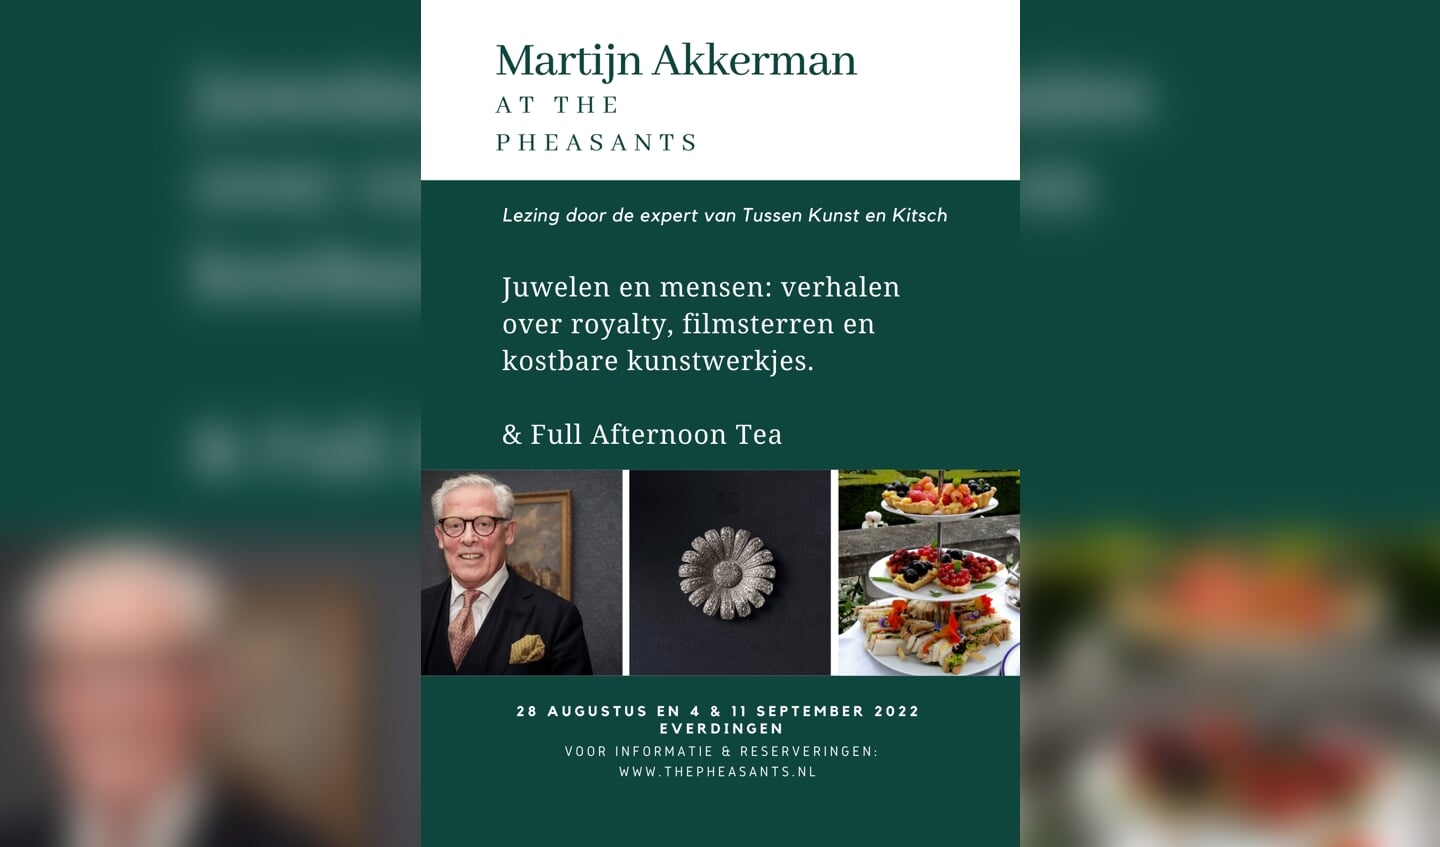 Heerlijke lezingen met Martijn Akkerman